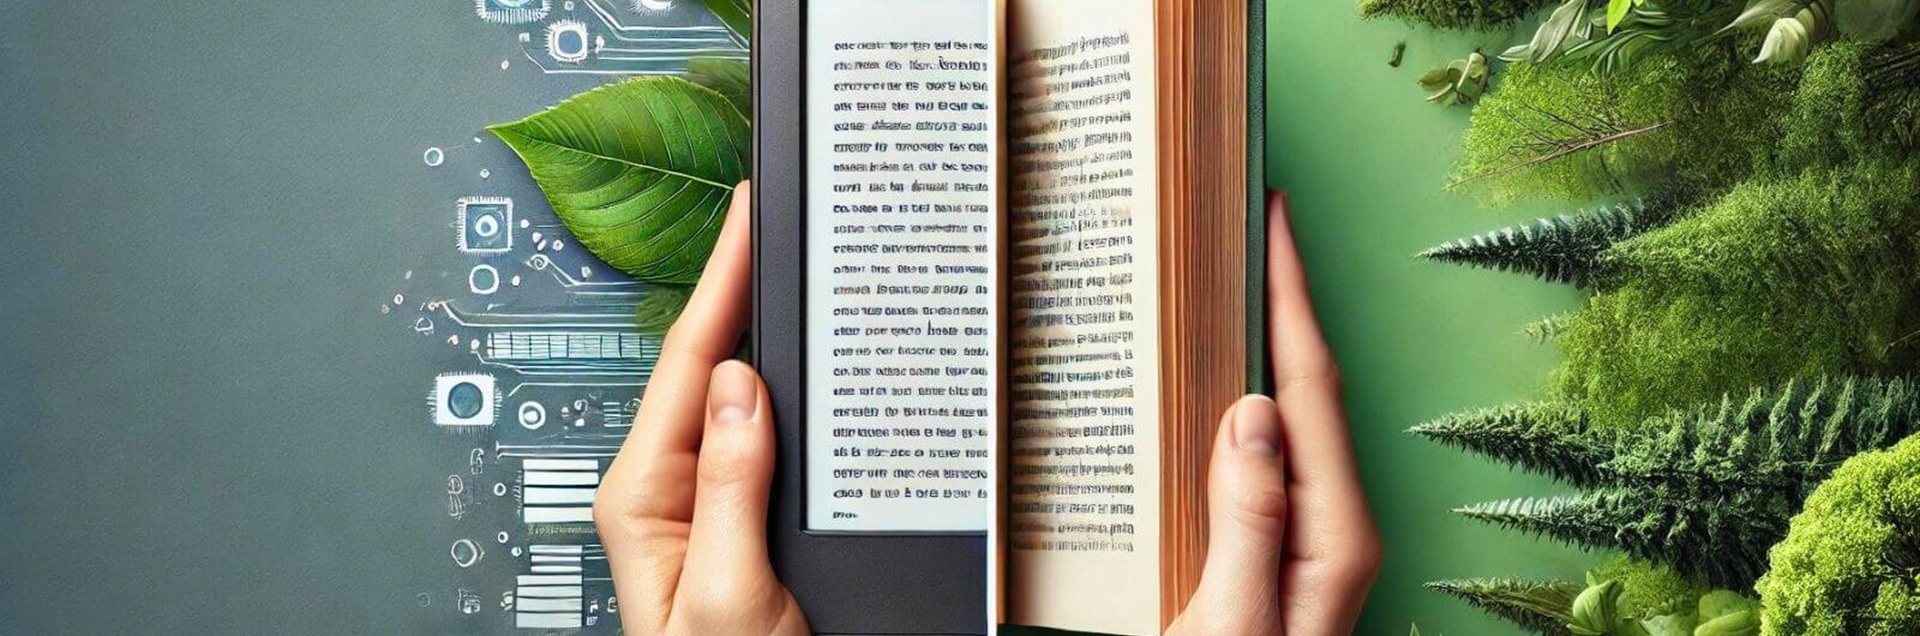 Электронные книги против бумажных: какой вариант более устойчивый?